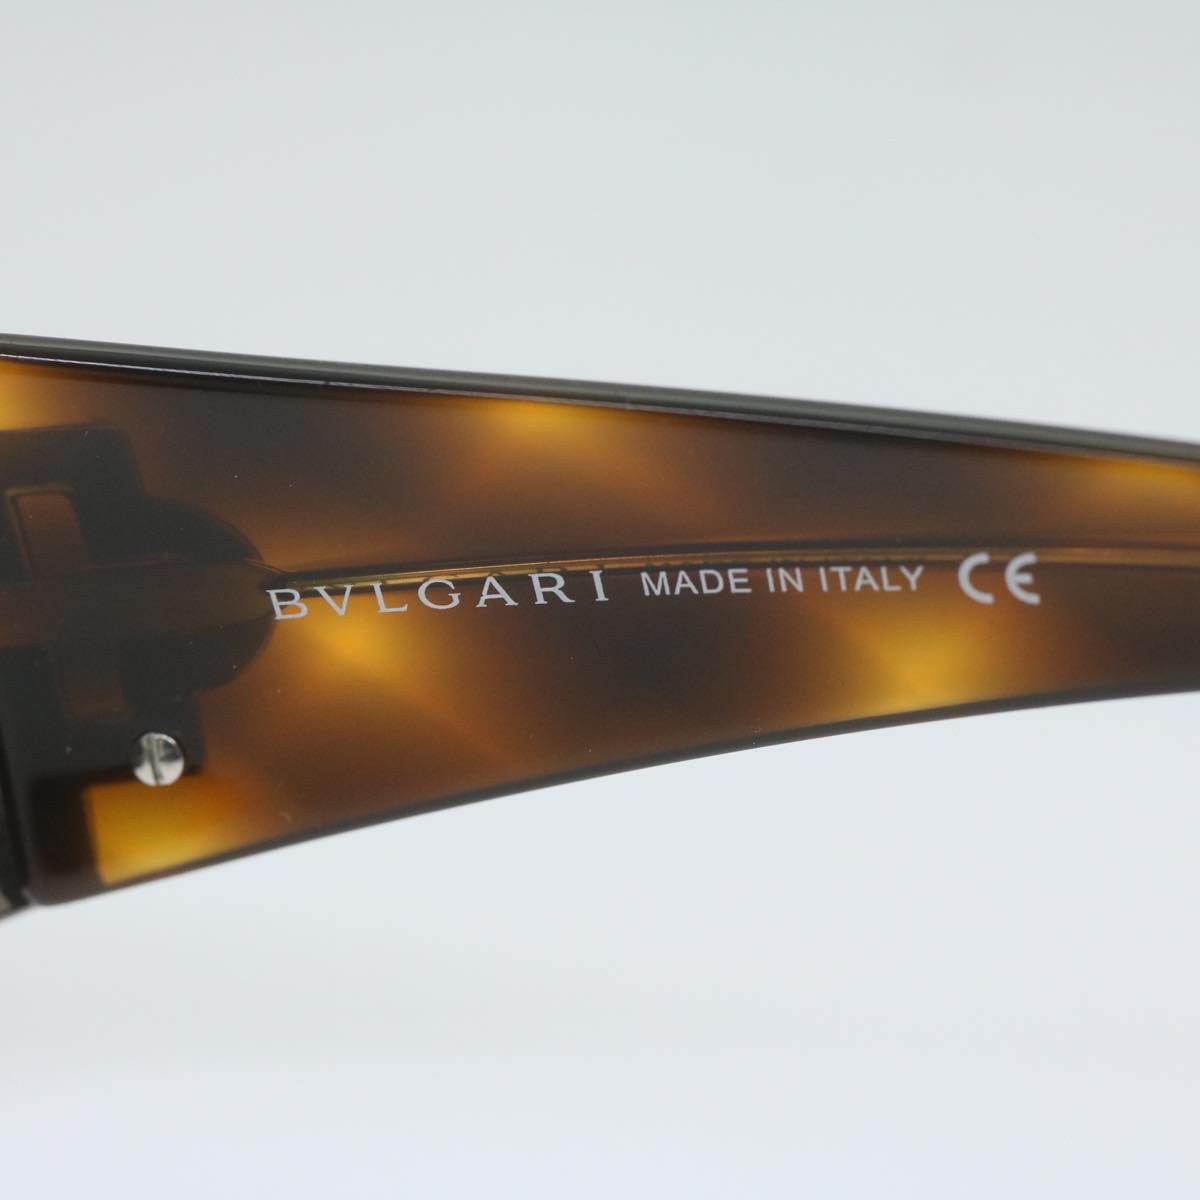 BVLGARI Sunglasses Plastic Brown Auth ep2777